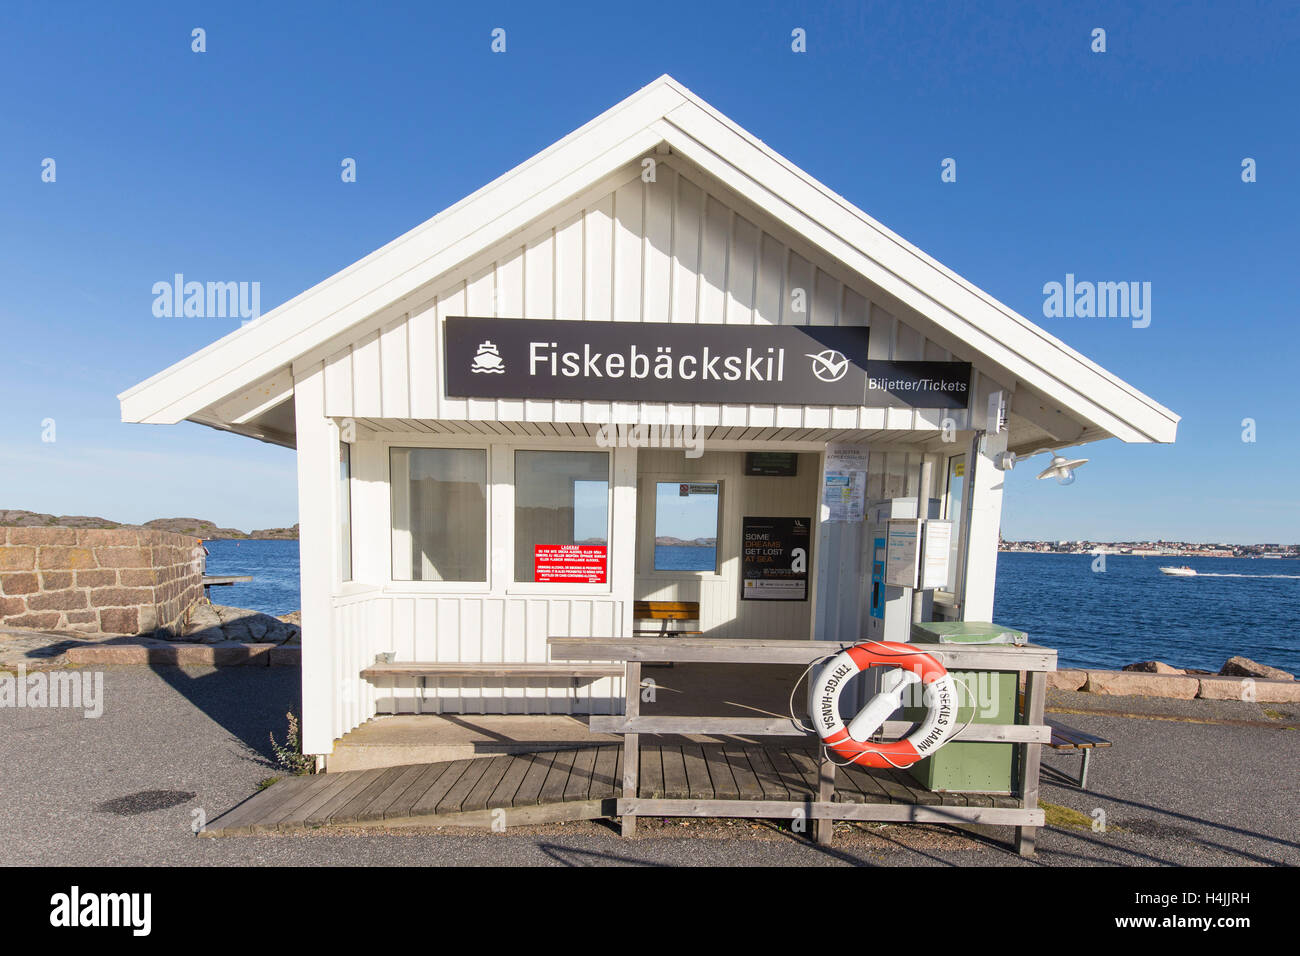 Bus shelter at the harbor, Fiskebäckskil, Bohuslän, West Sweden, Sweden Stock Photo